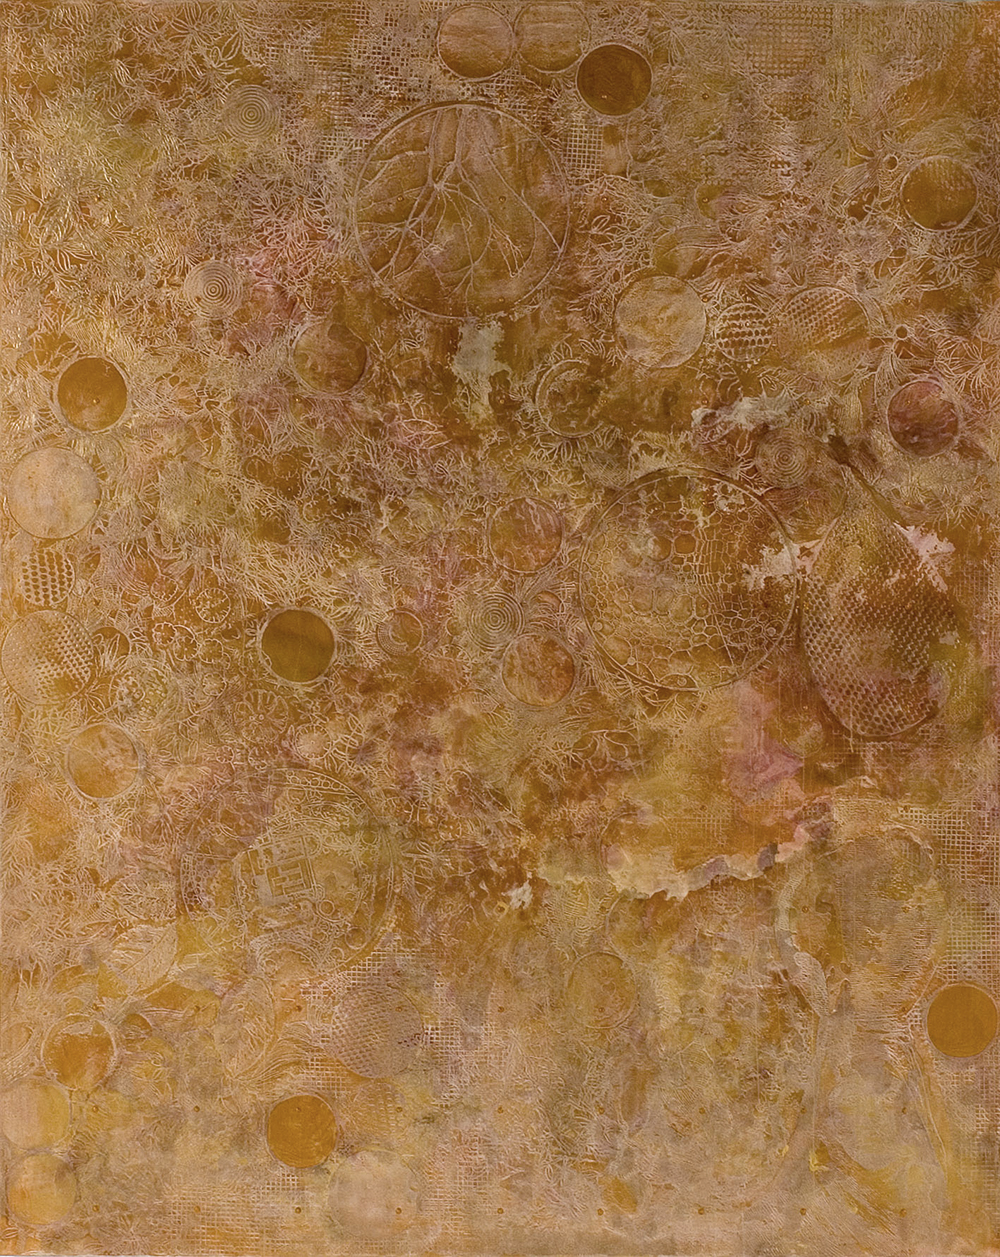 Il riposo della forma, 2005, acrilico su tela, cm 250x200